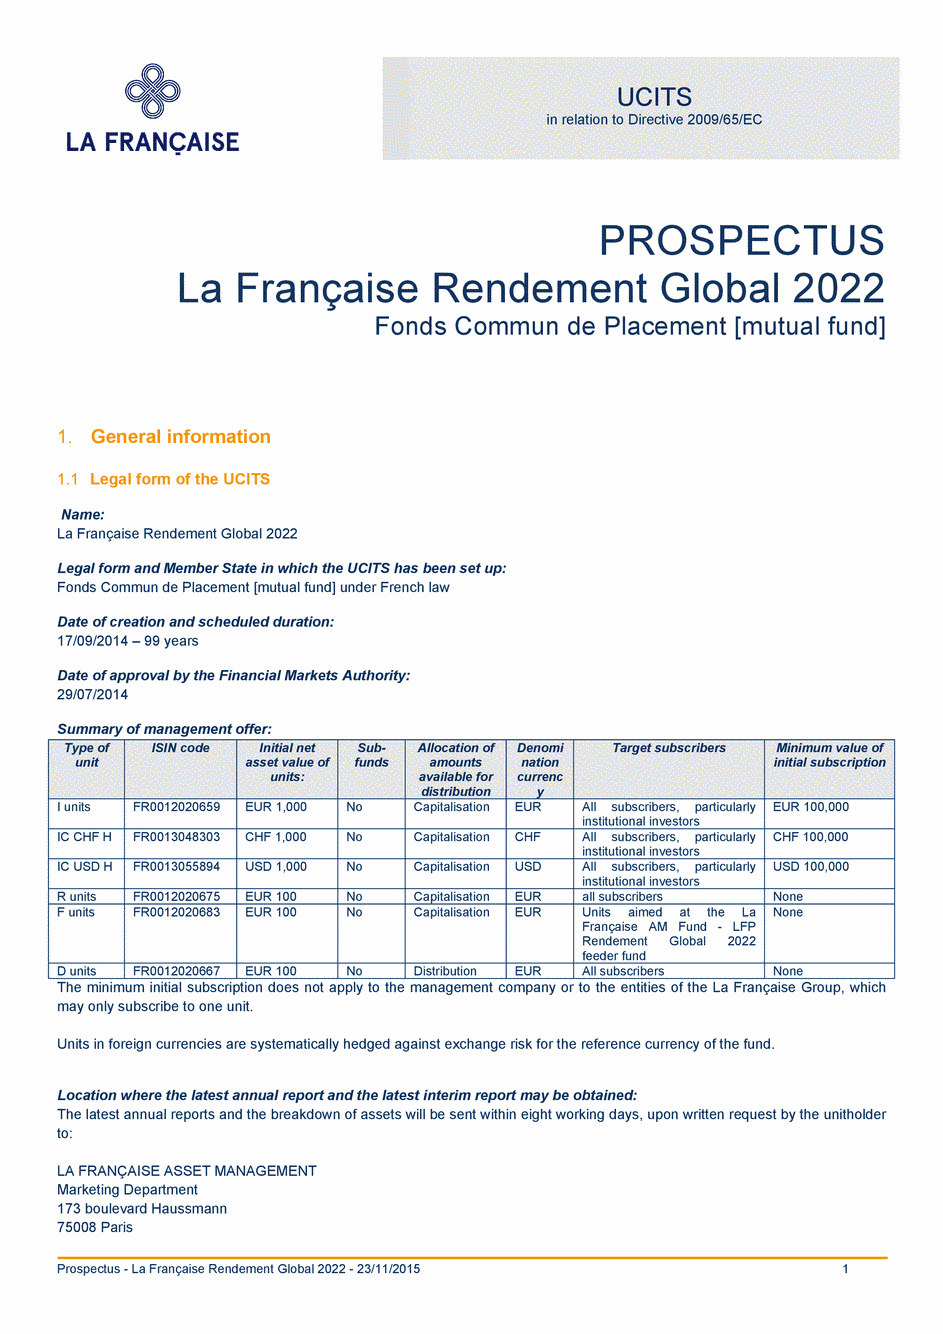 Prospectus La Française Rendement Global 2022 - Part I - 23/11/2015 - Anglais